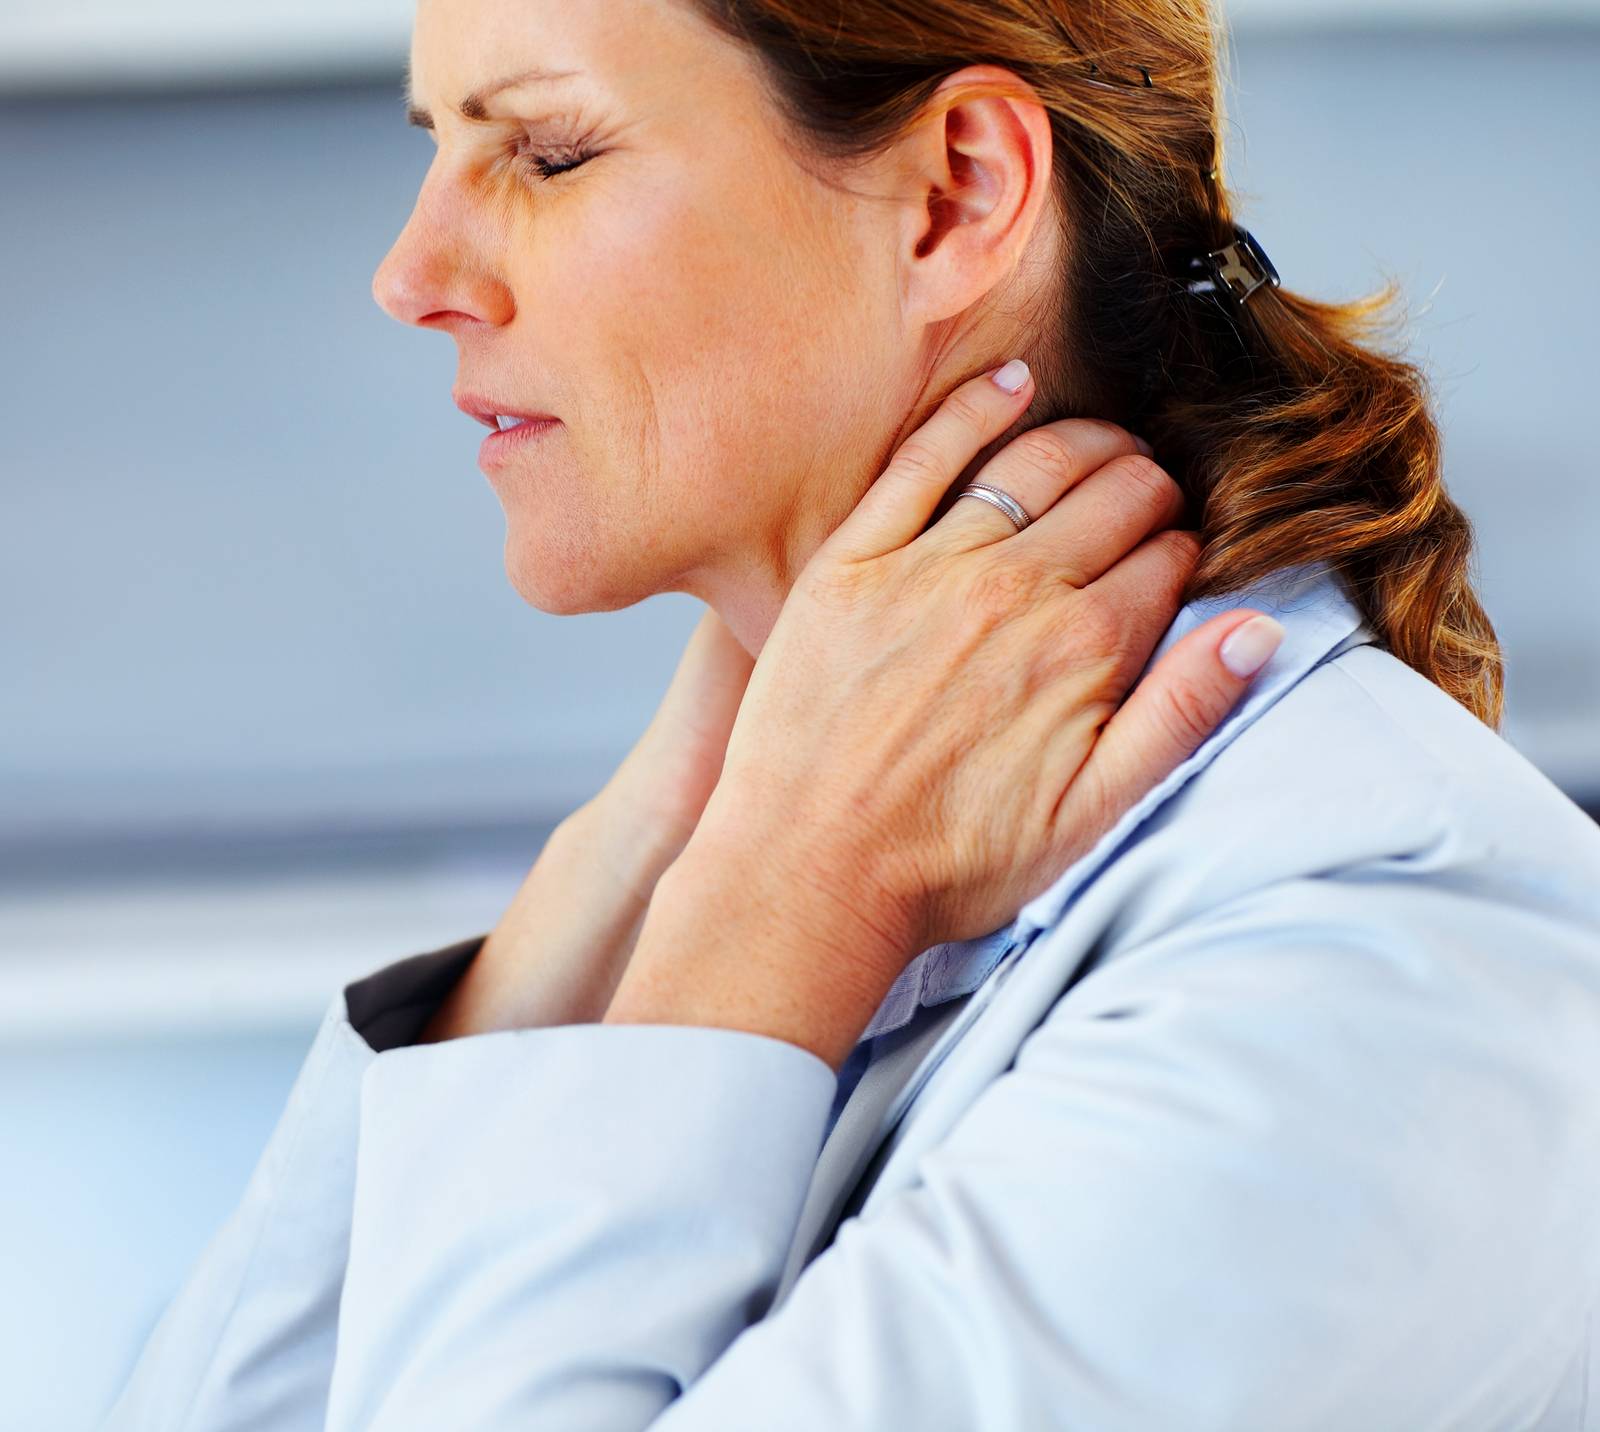 Цервикалгия (боль в шее) - лечение, симптомы, причины, диагностика | центр дикуля